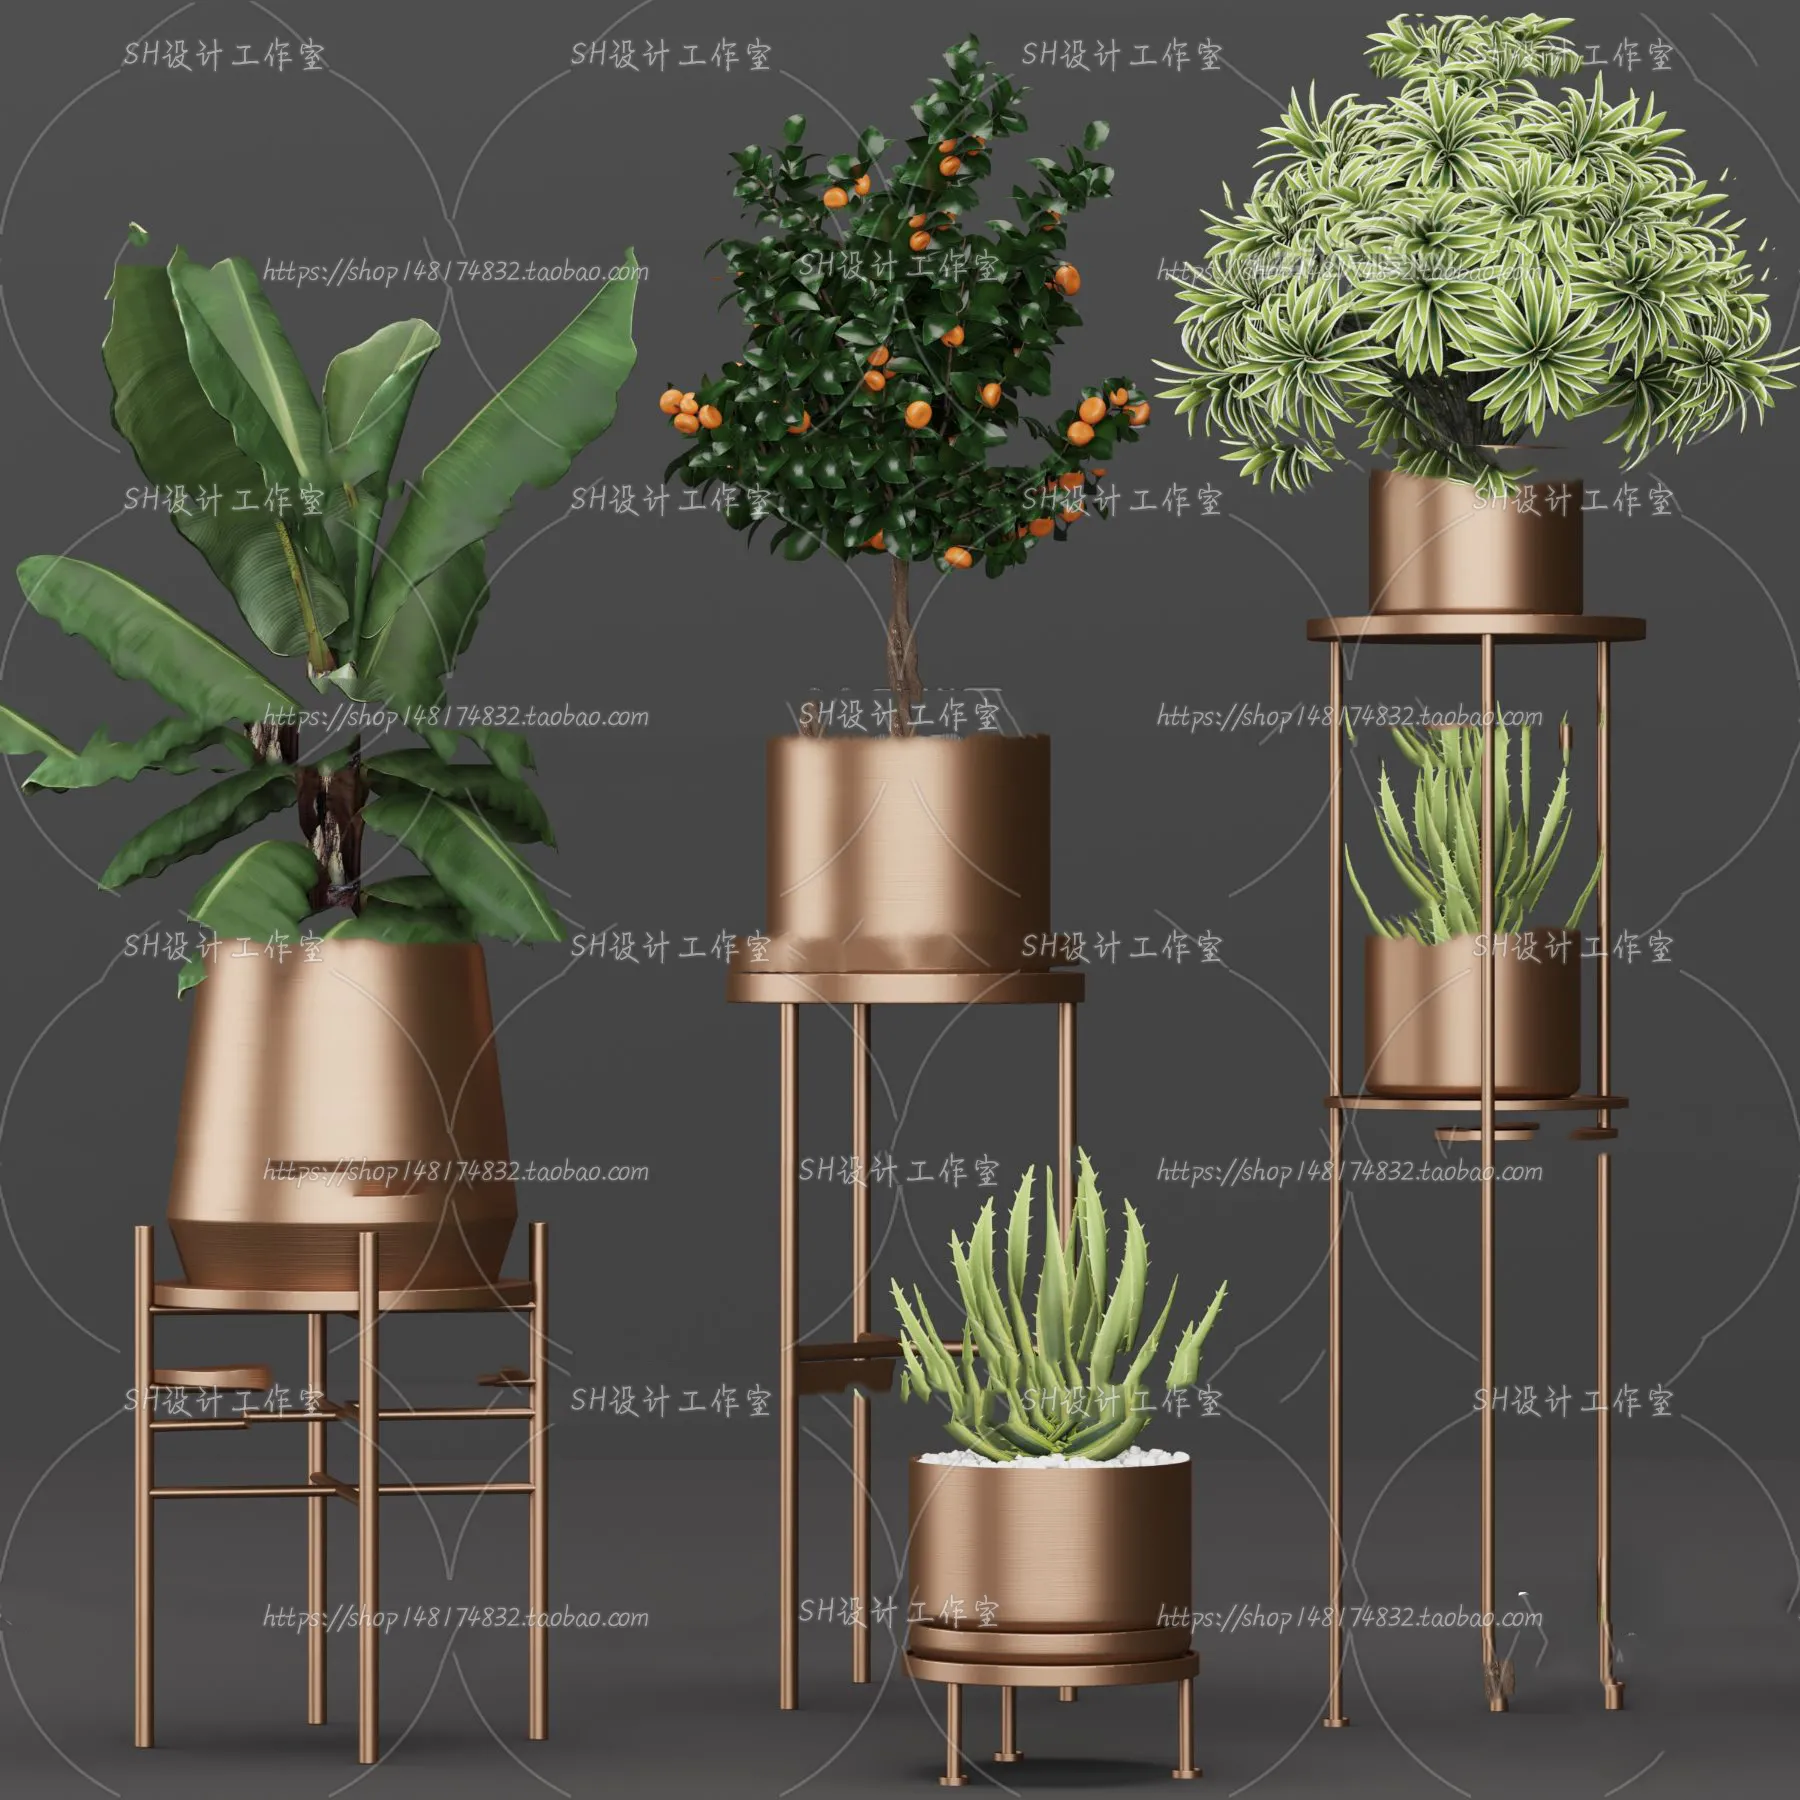 PLANT 3D MODELS – 077